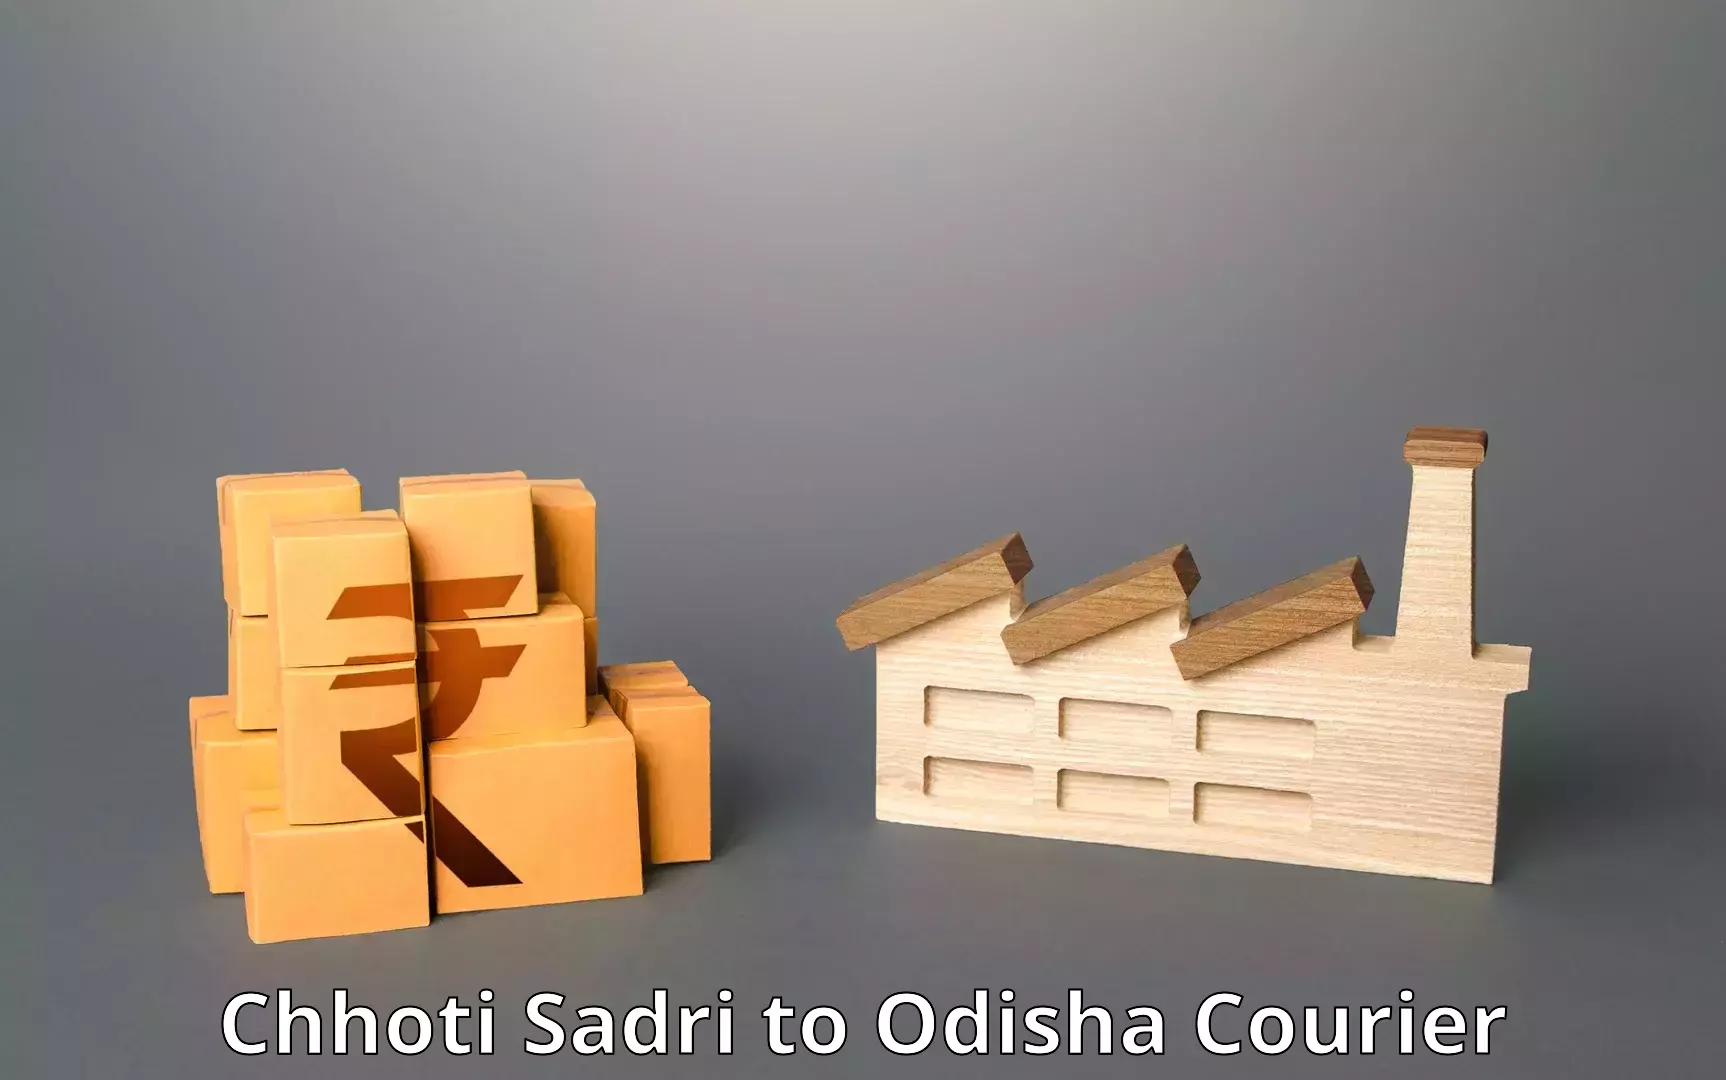 Logistics service provider Chhoti Sadri to Odisha